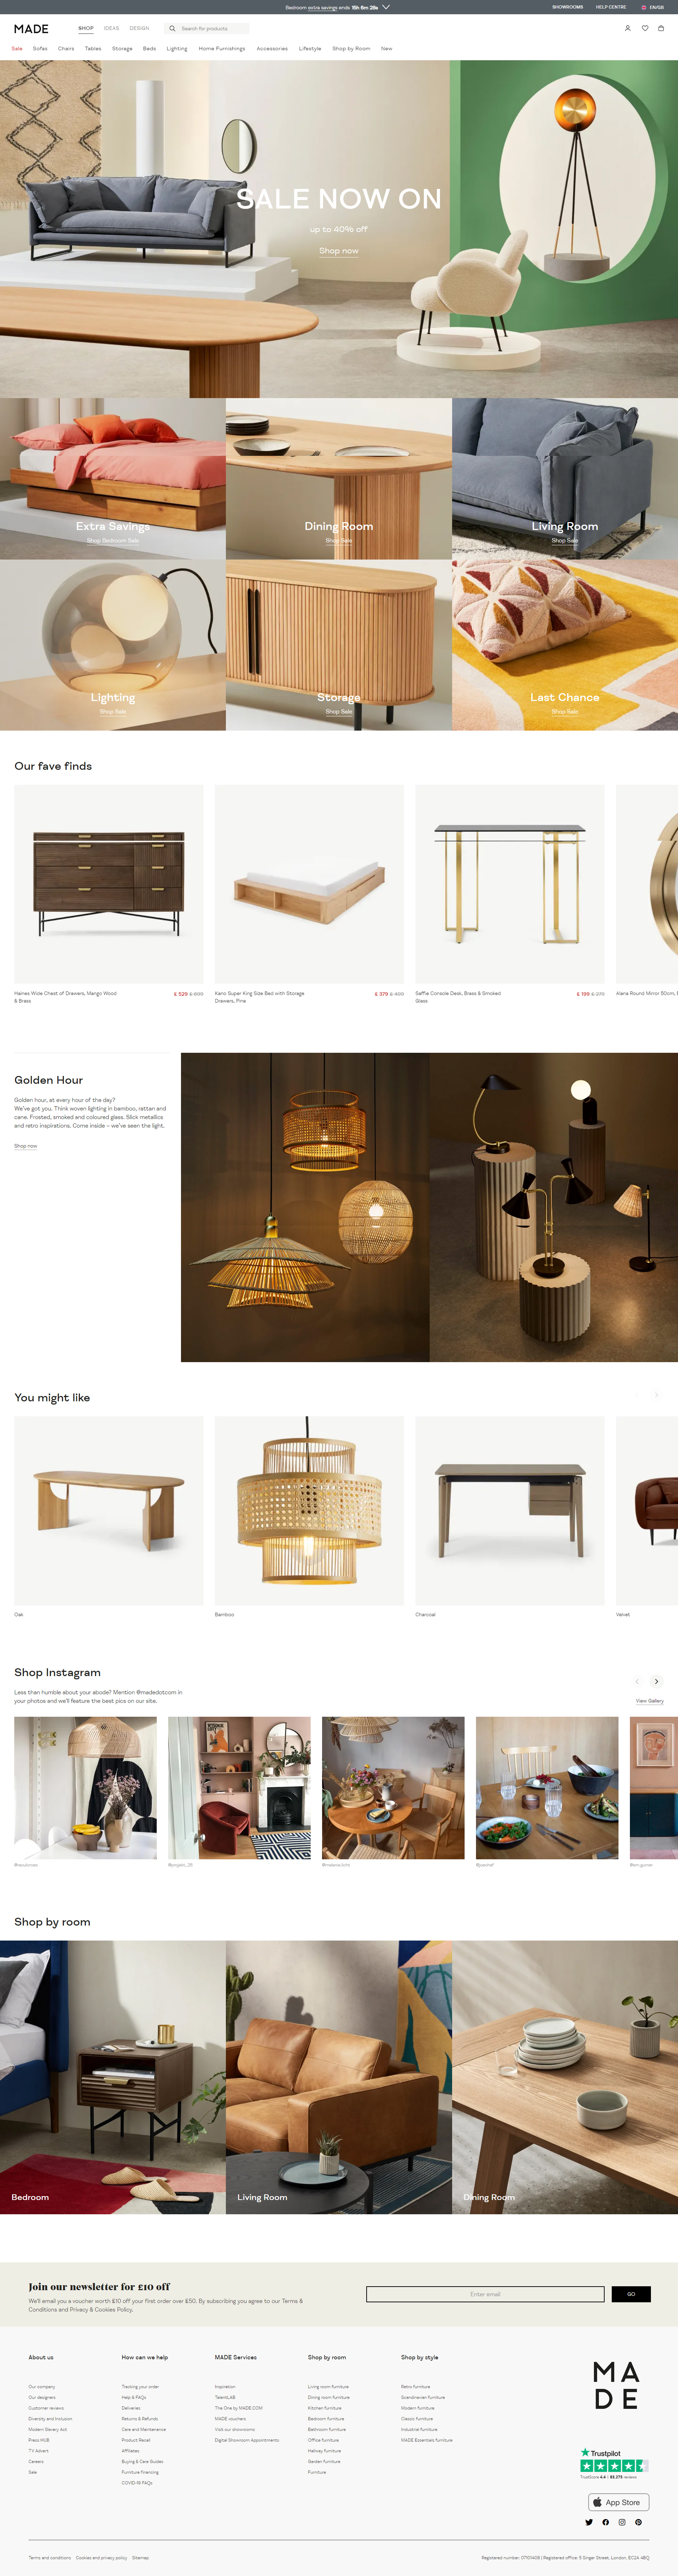 MADE家具在线购物网站设计